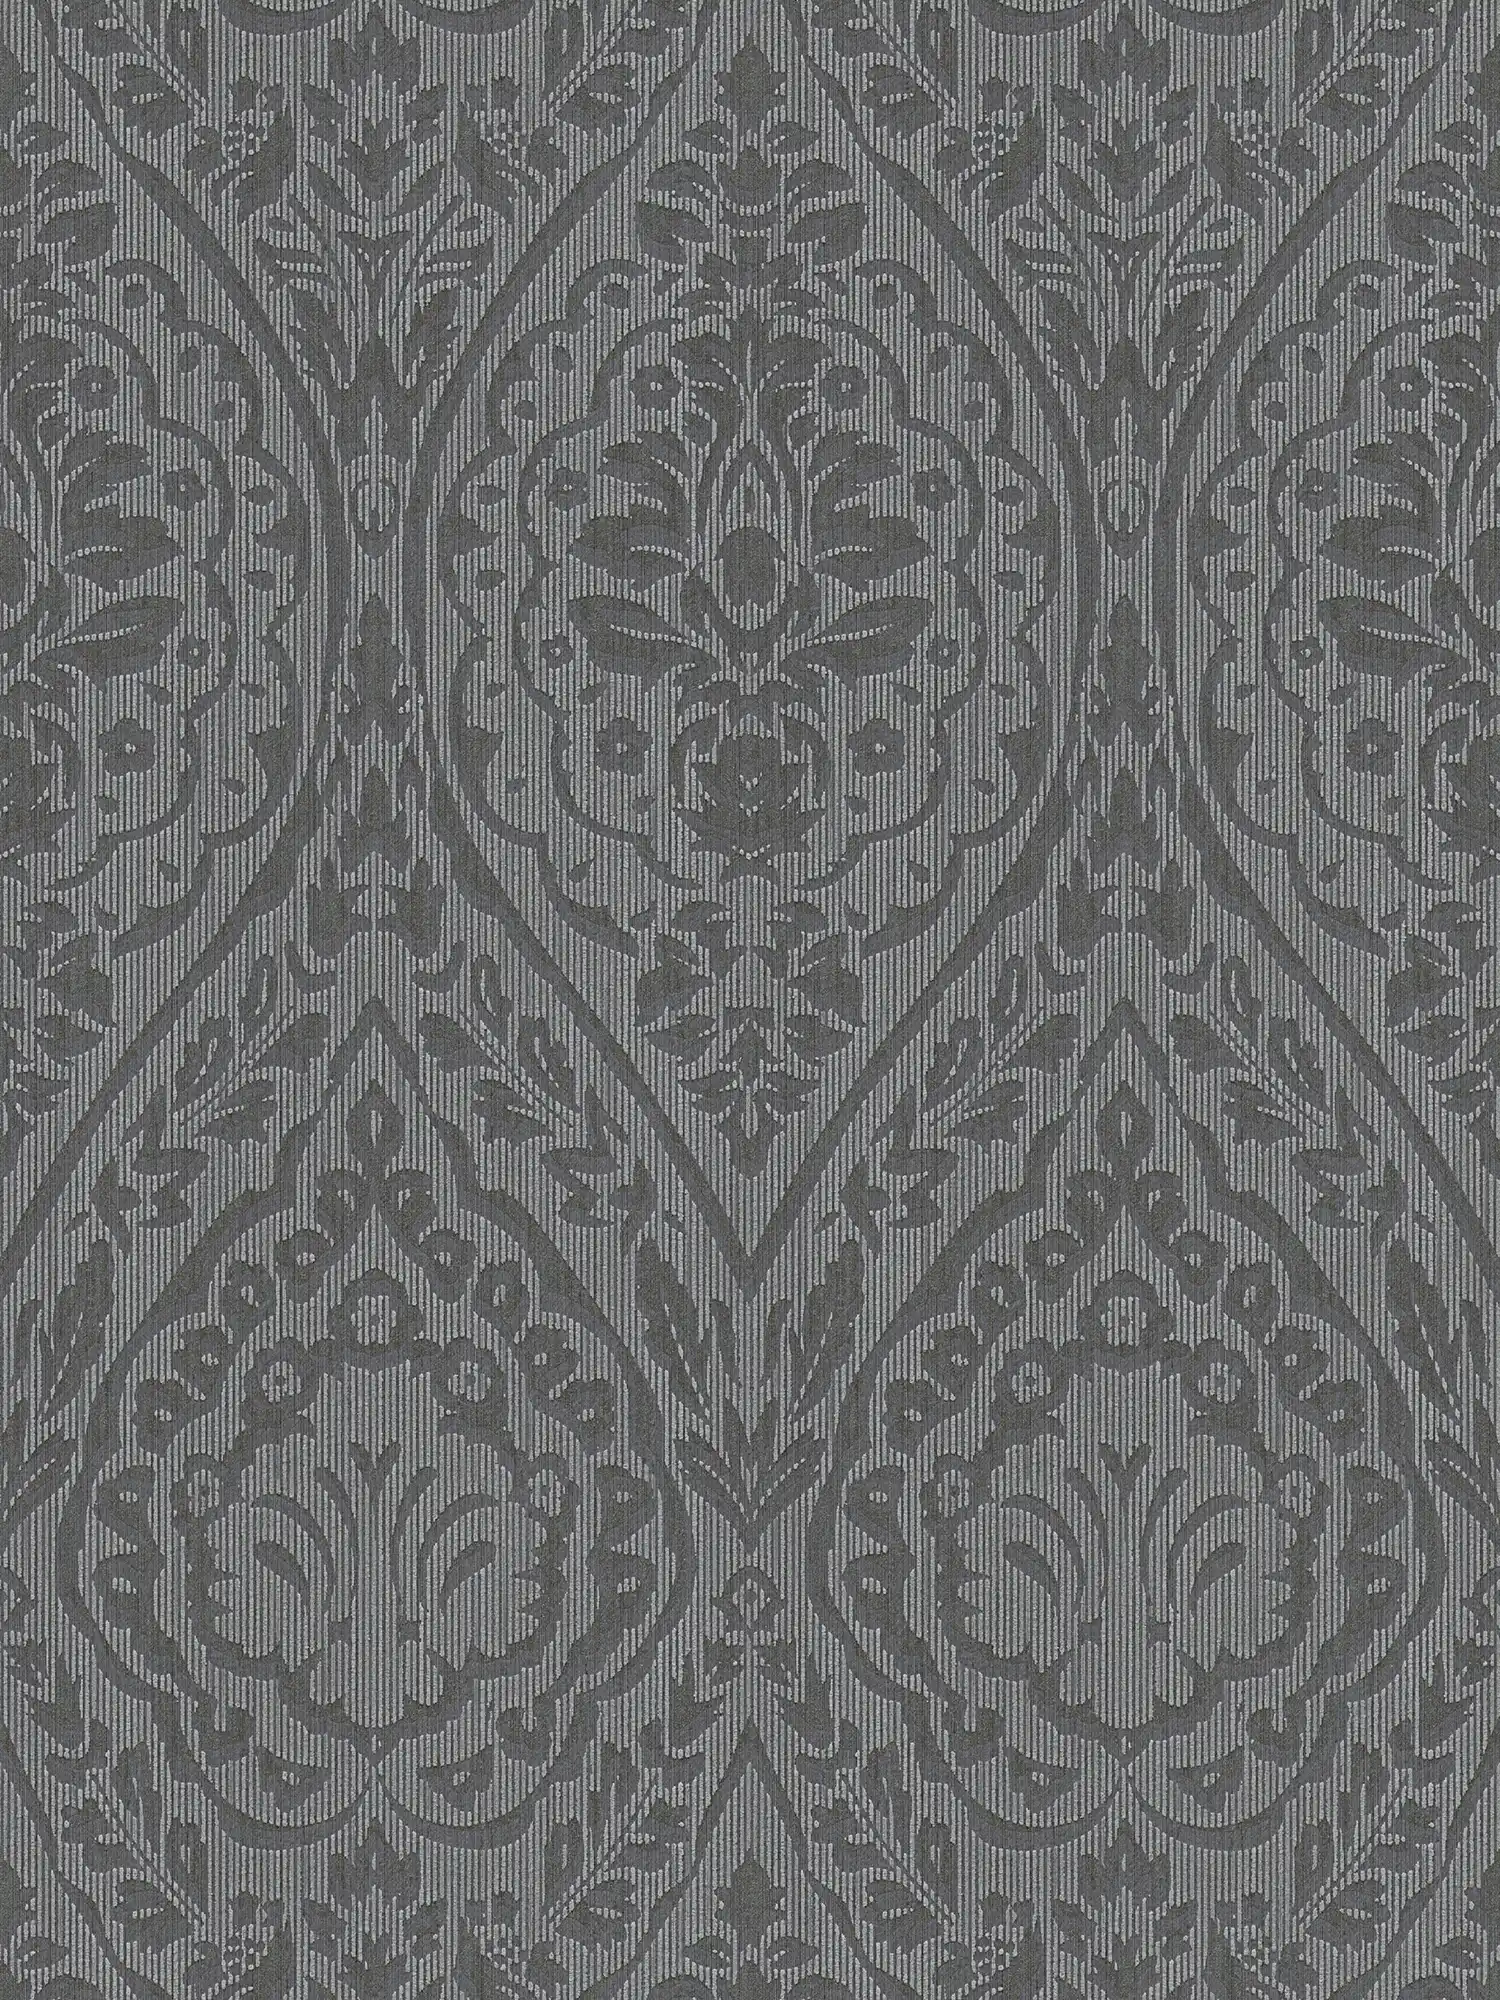 Vliesbehang met decoratief patroon & structuurdesign - bruin, zwart
